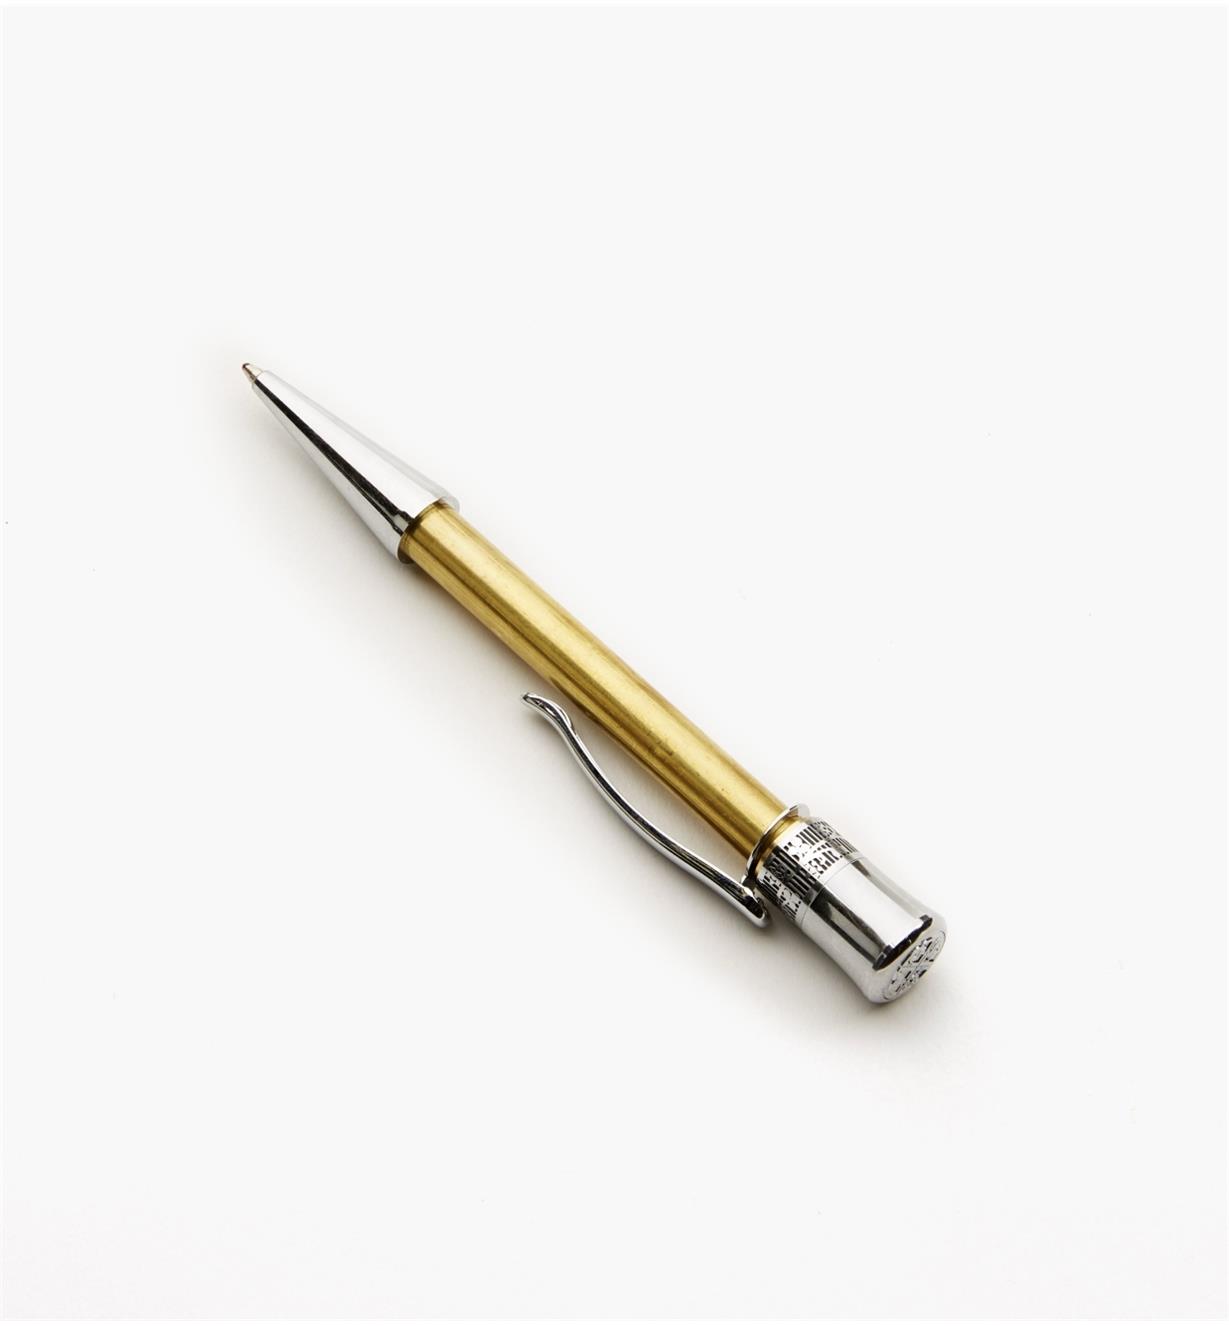 88K8271 - Glacia Ballpoint Pen, Chrome